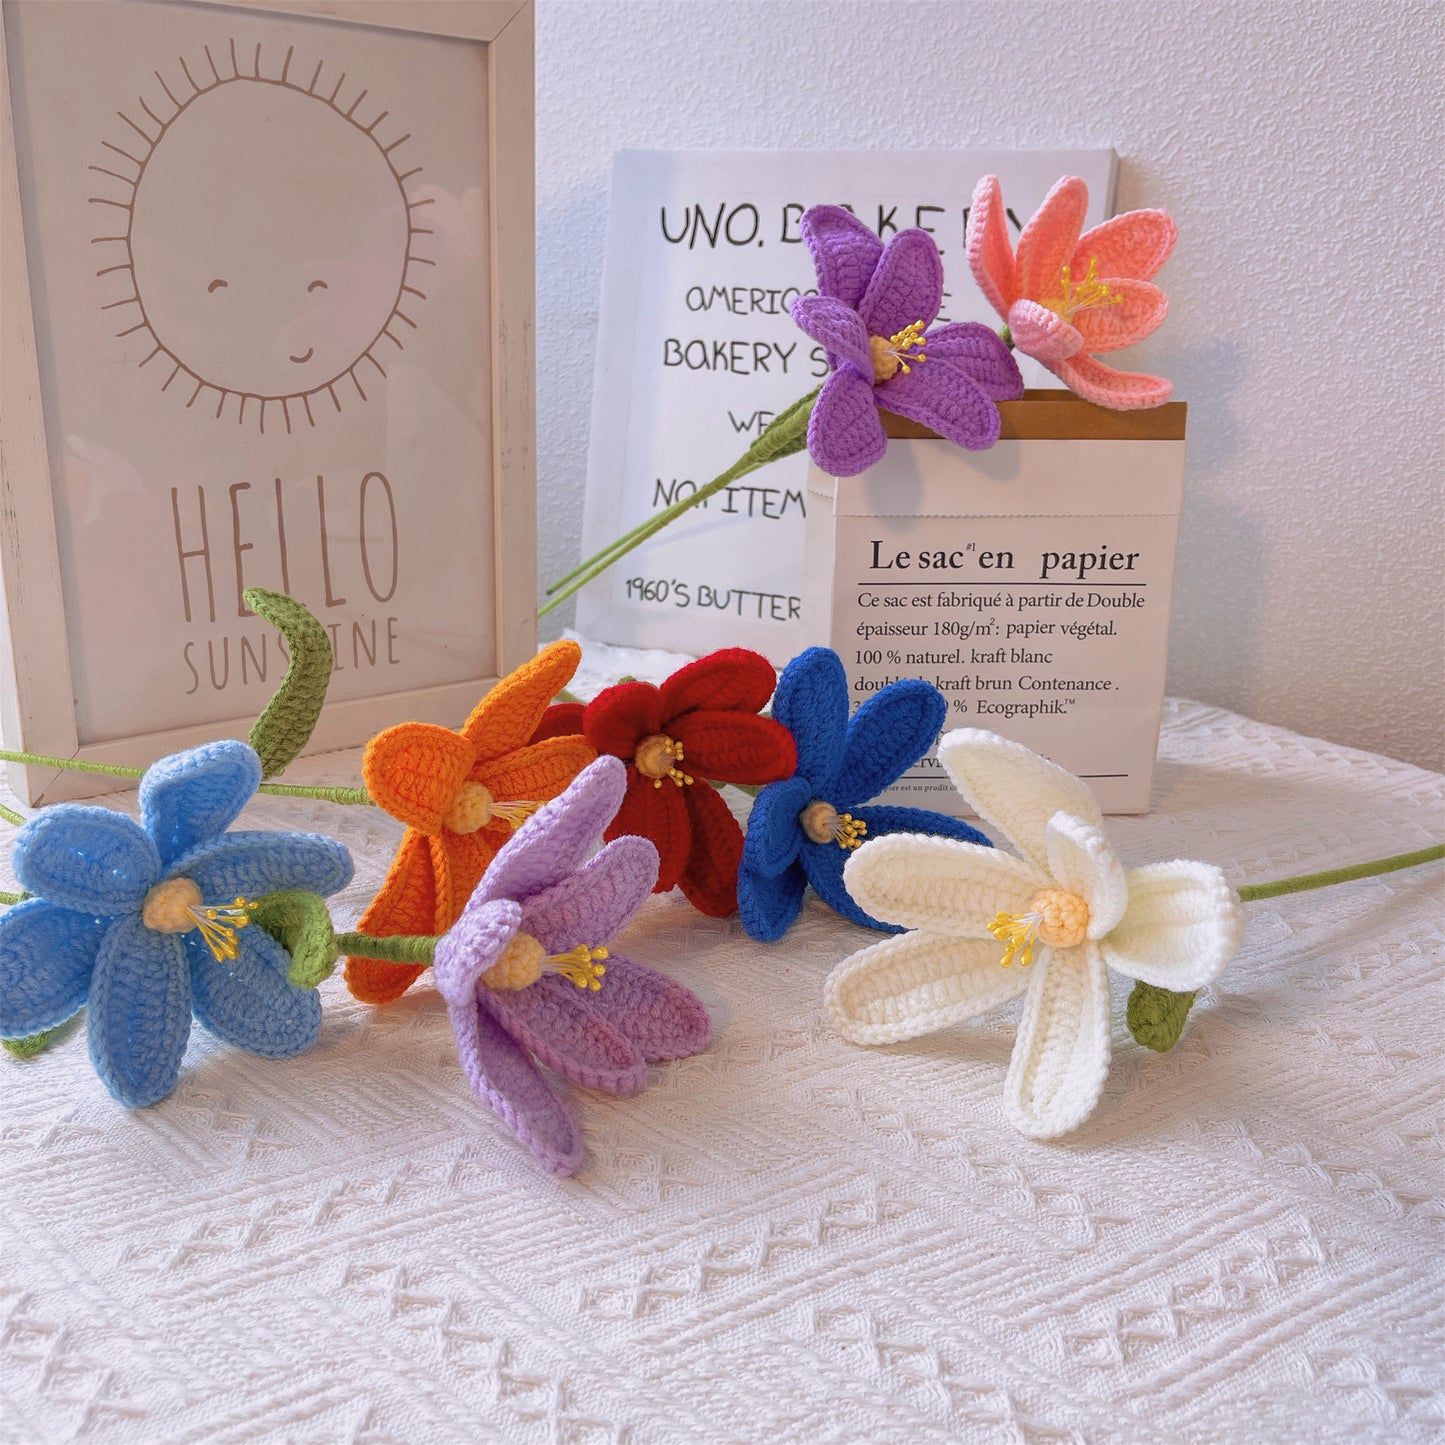 Fleurs de tulipes au crochet faites à la main - Fil fabriqué, Décoration intérieure, Idée cadeau, Arrangement floral, Fleur symbolique, Accents floraux, Fleurs de bouquet